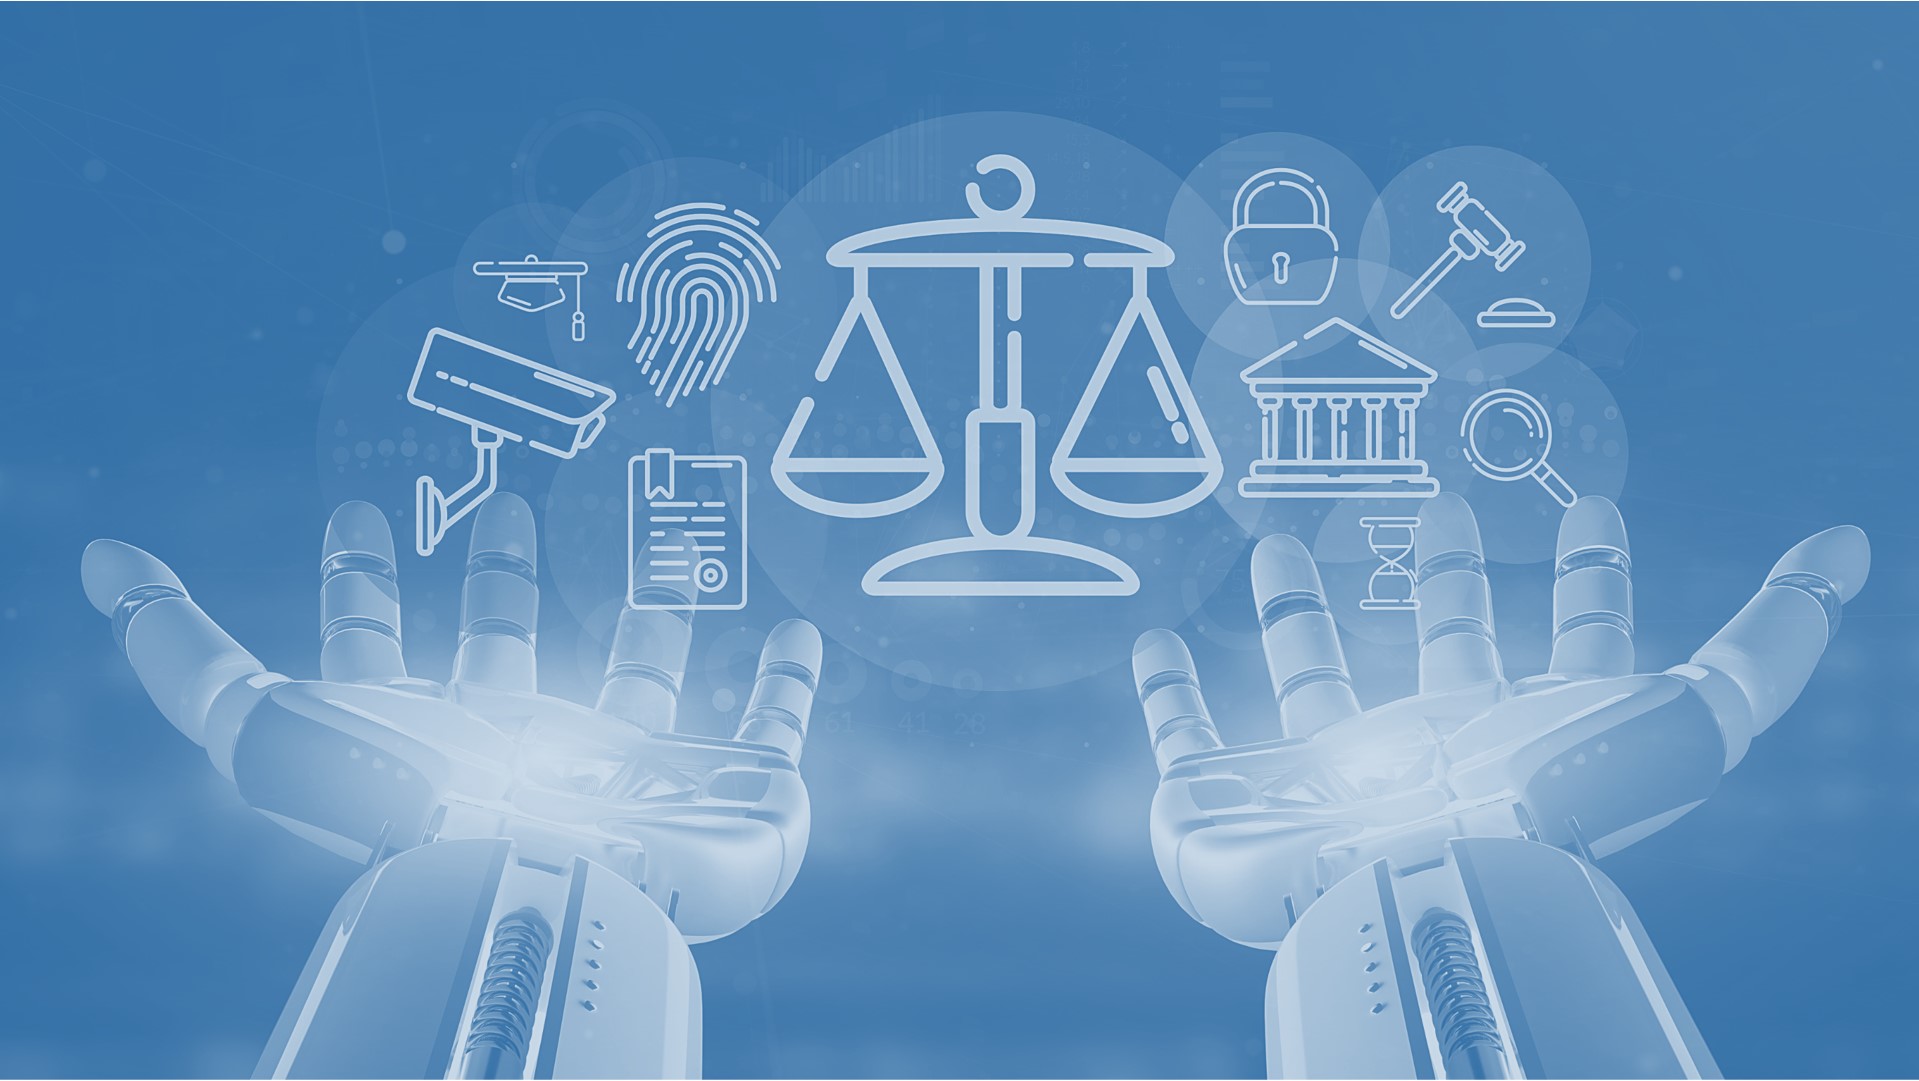 Η έκθεση επιτροπής Πισσαρίδη και η Τεχνητή Νοημοσύνη στην απονομή Δικαιοσύνης